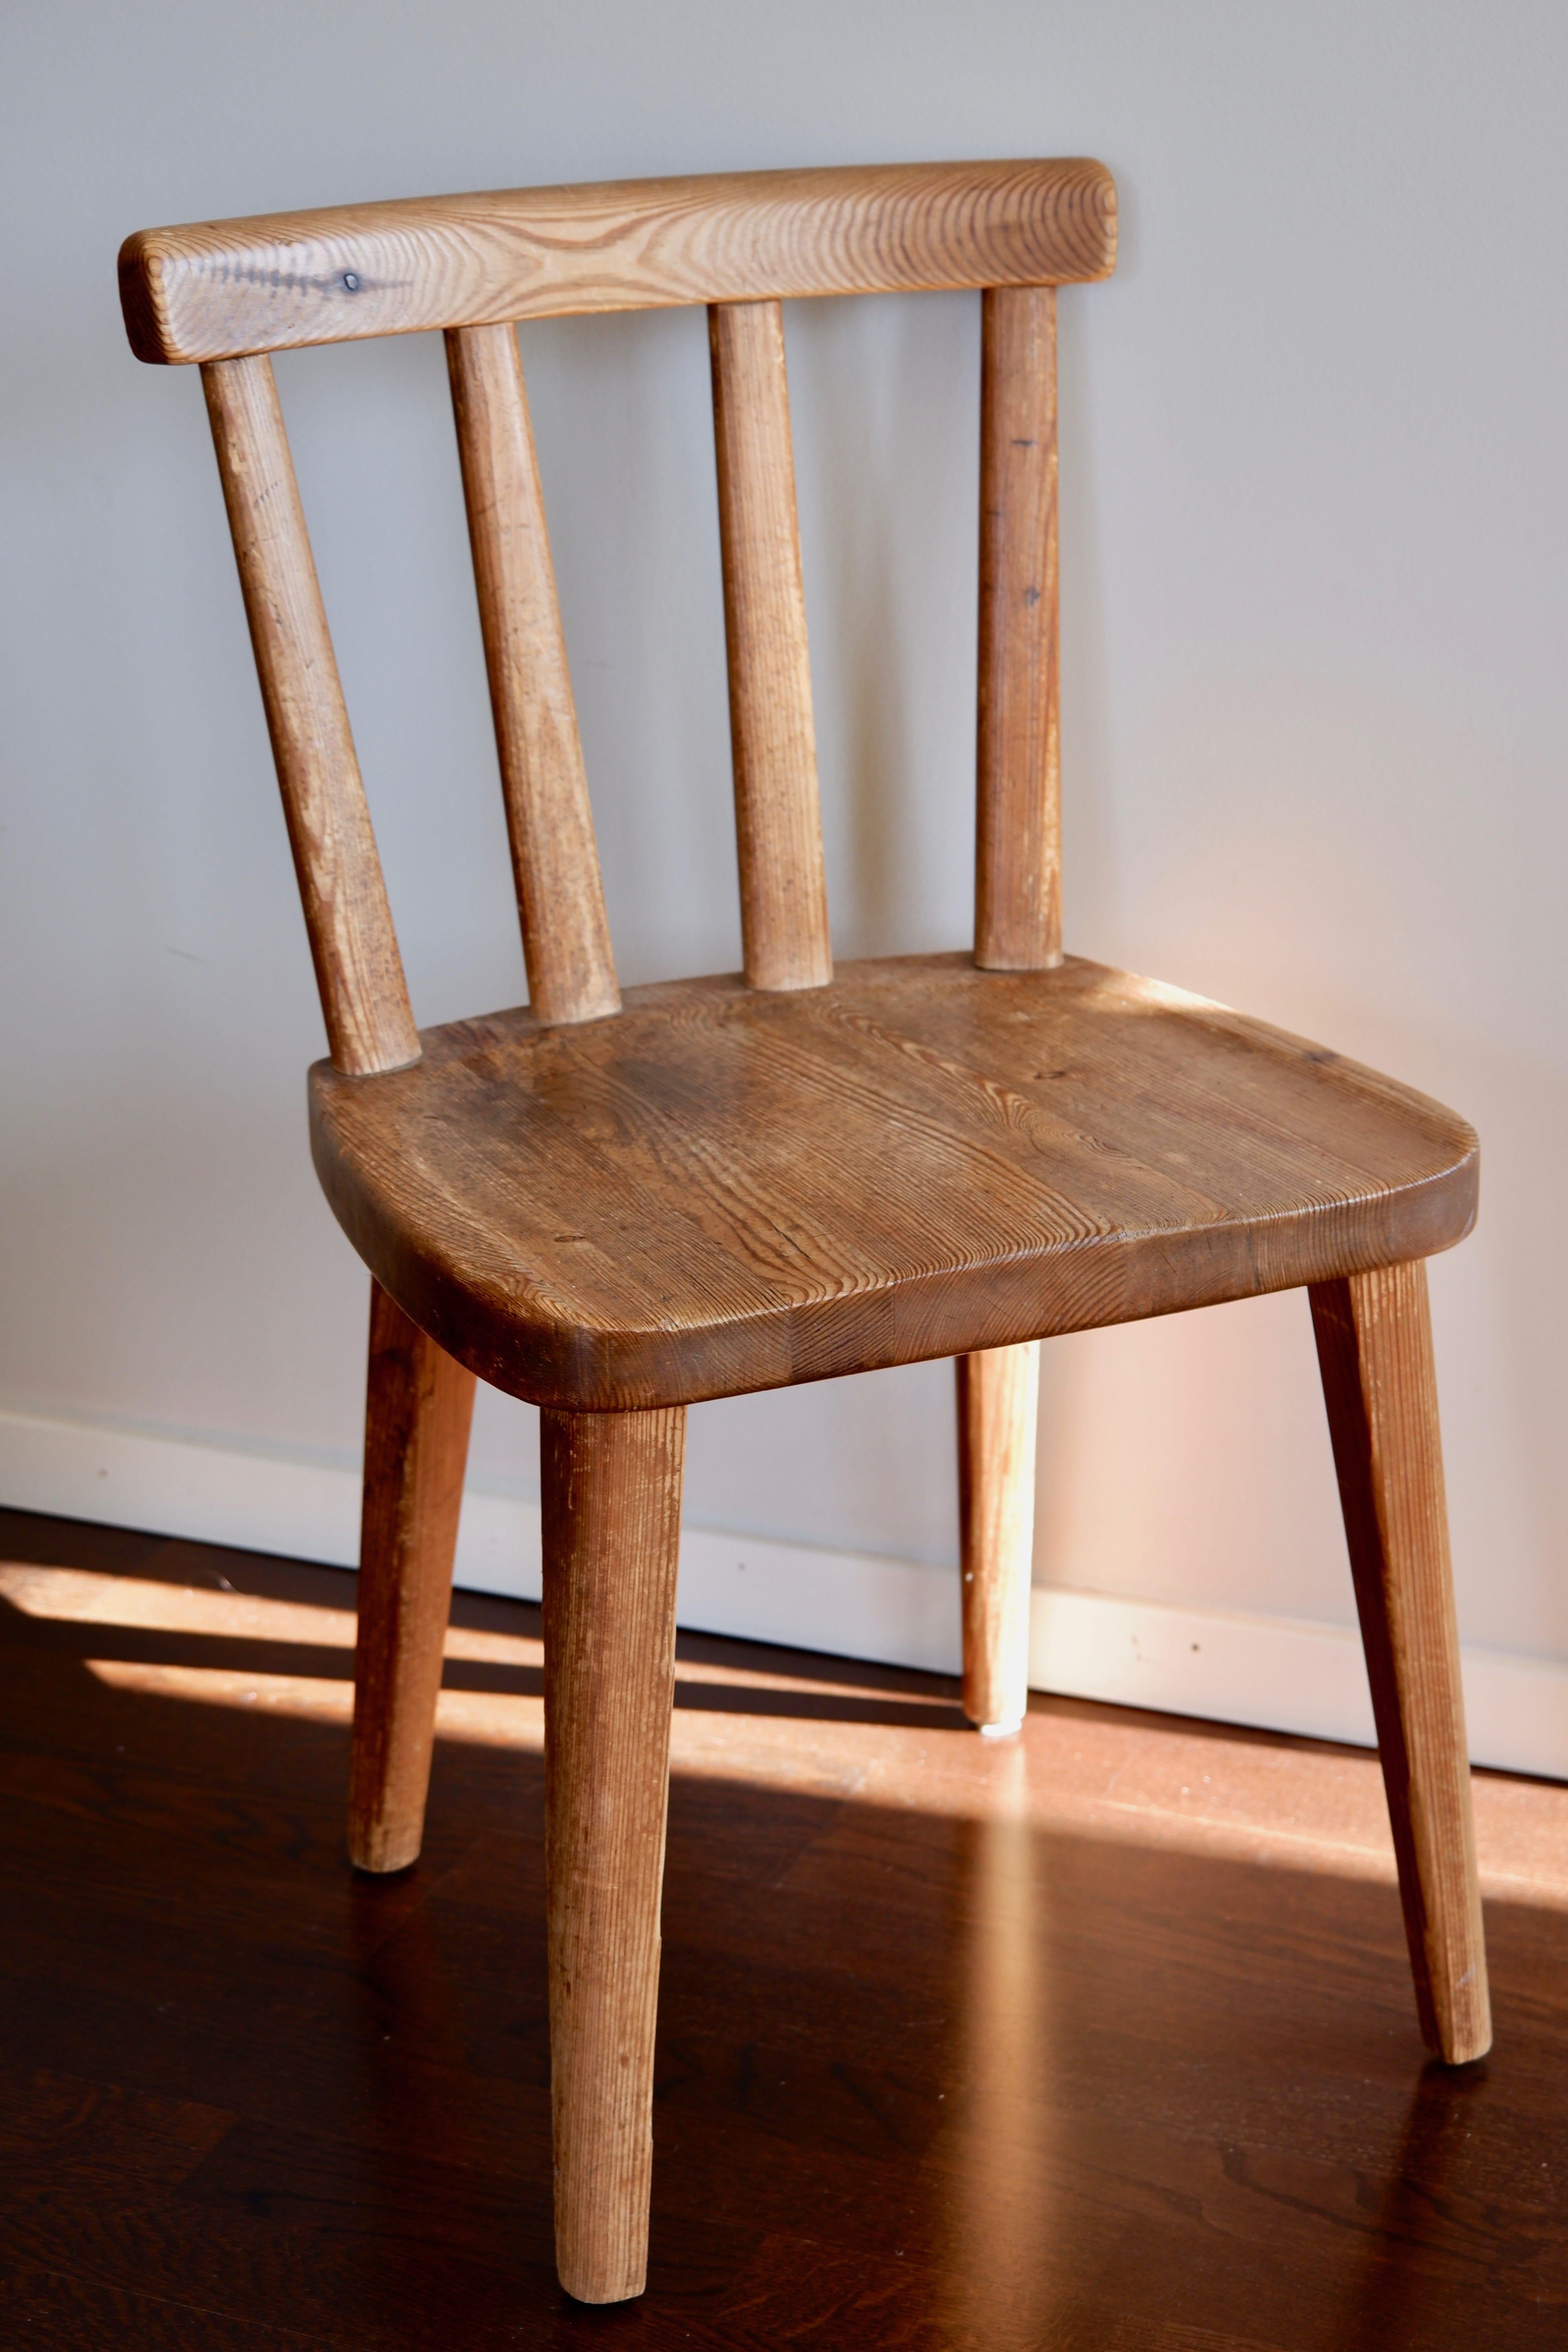 Authentische Axel Einar Hjorth utö Stühle, entworfen 1932 und hergestellt in den 30er Jahren von Nordika Kompaniet. Der Stuhl ist in einem guten Zustand, stabil, mit einer authentischen und unberührten Patina. Der Stuhl ist aus massivem Kiefernholz